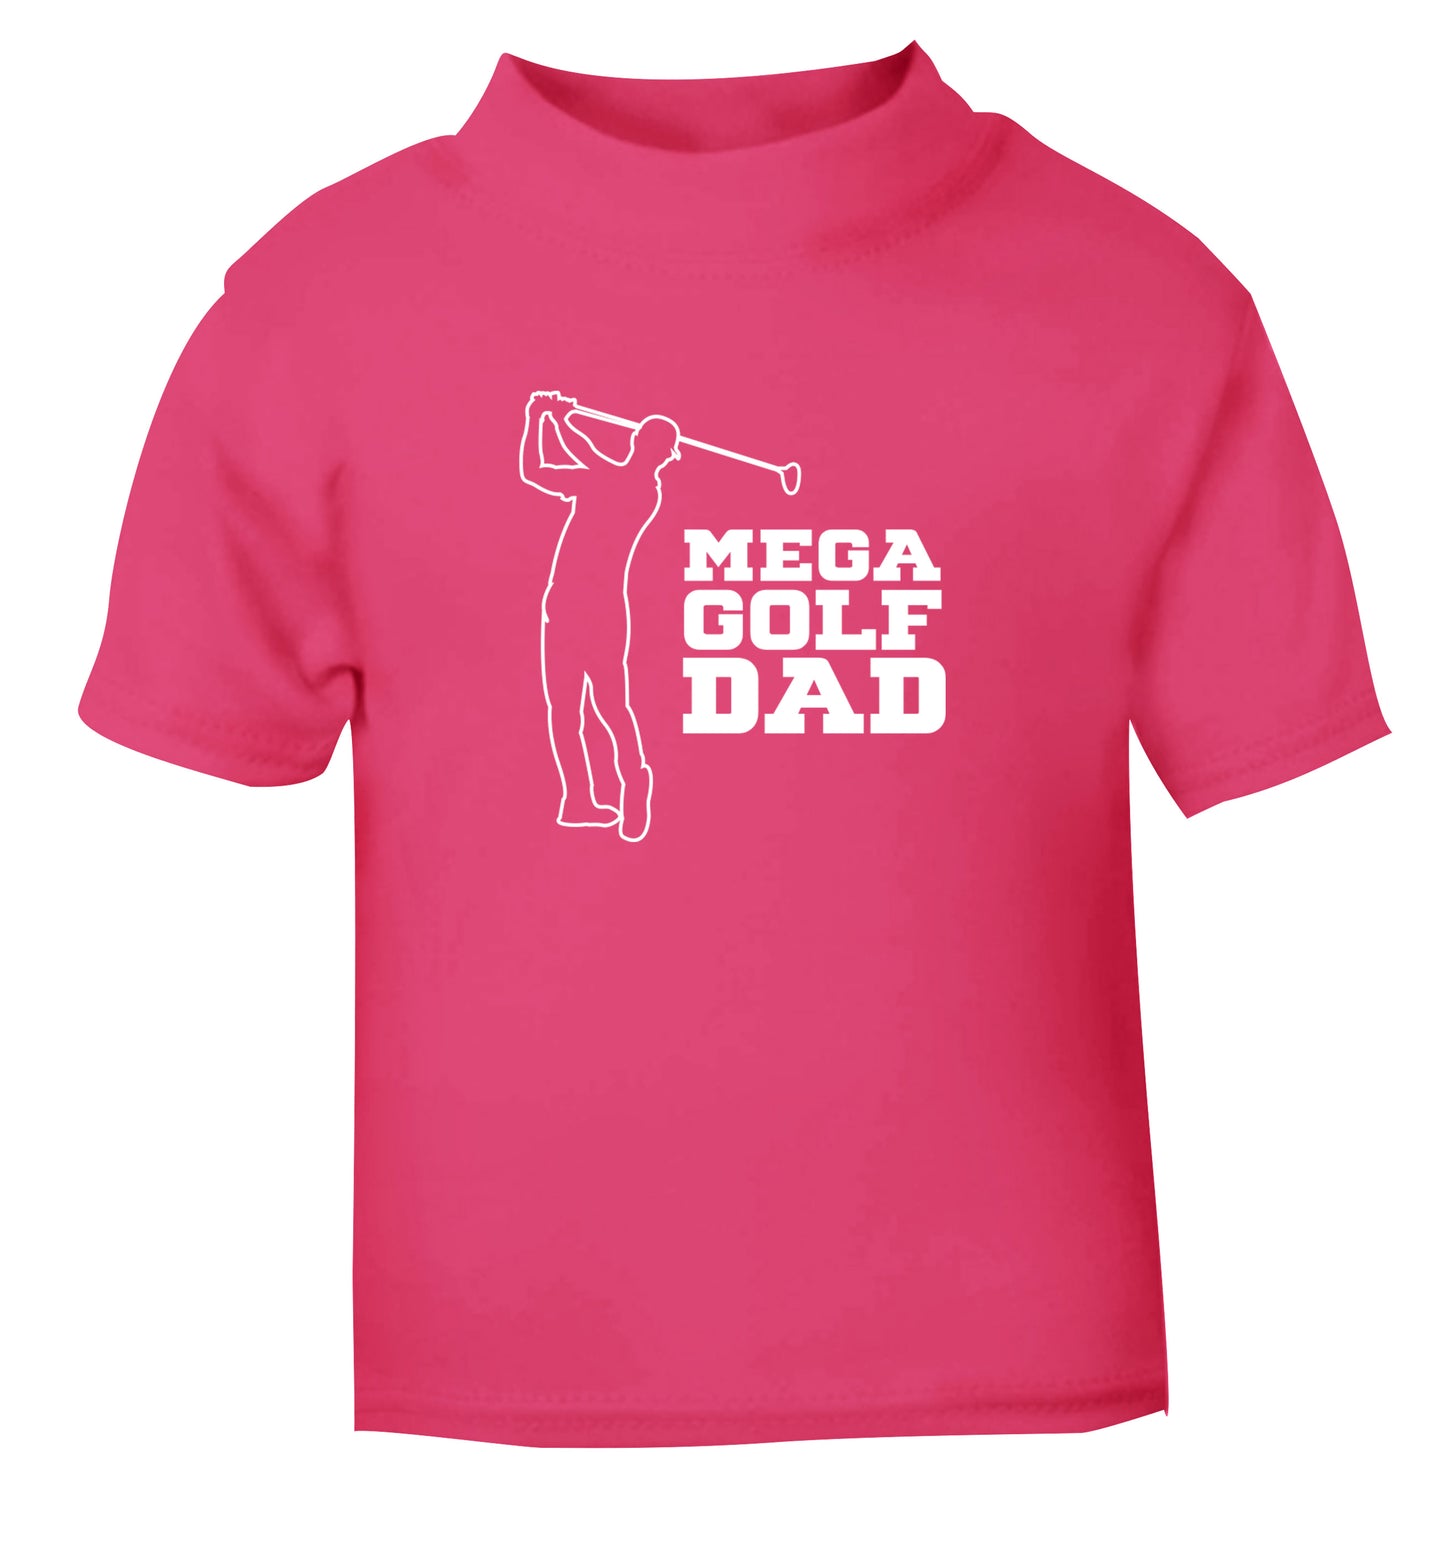 Mega golfing dad pink Baby Toddler Tshirt 2 Years